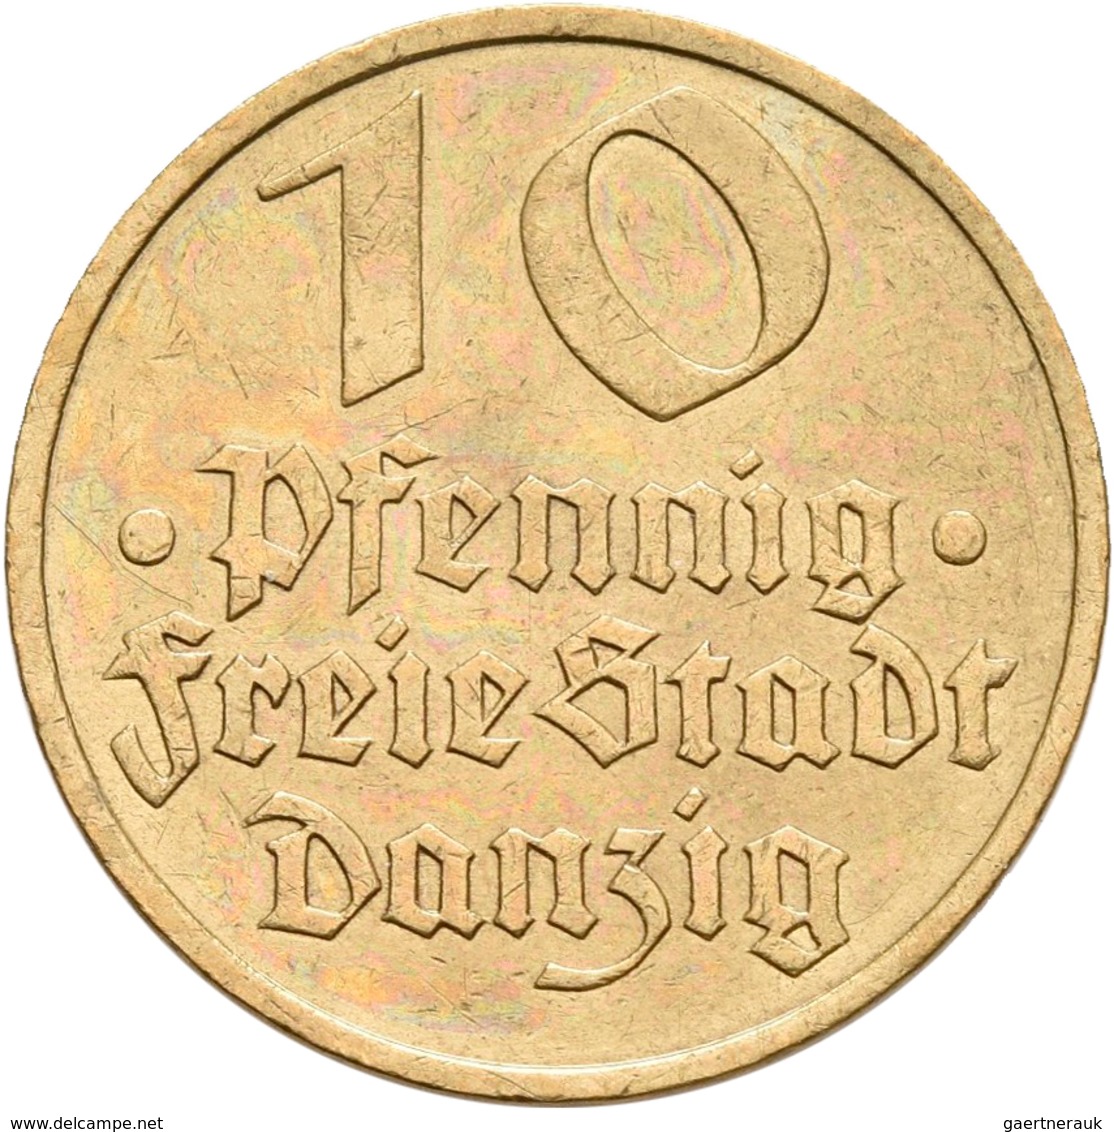 Danzig: Typensammlung Danzig, dabei: 10 Pfennig 1920 Eisen; 8-Münzen-Set 1923 (1 Pf. - 5 Gulden); 6-